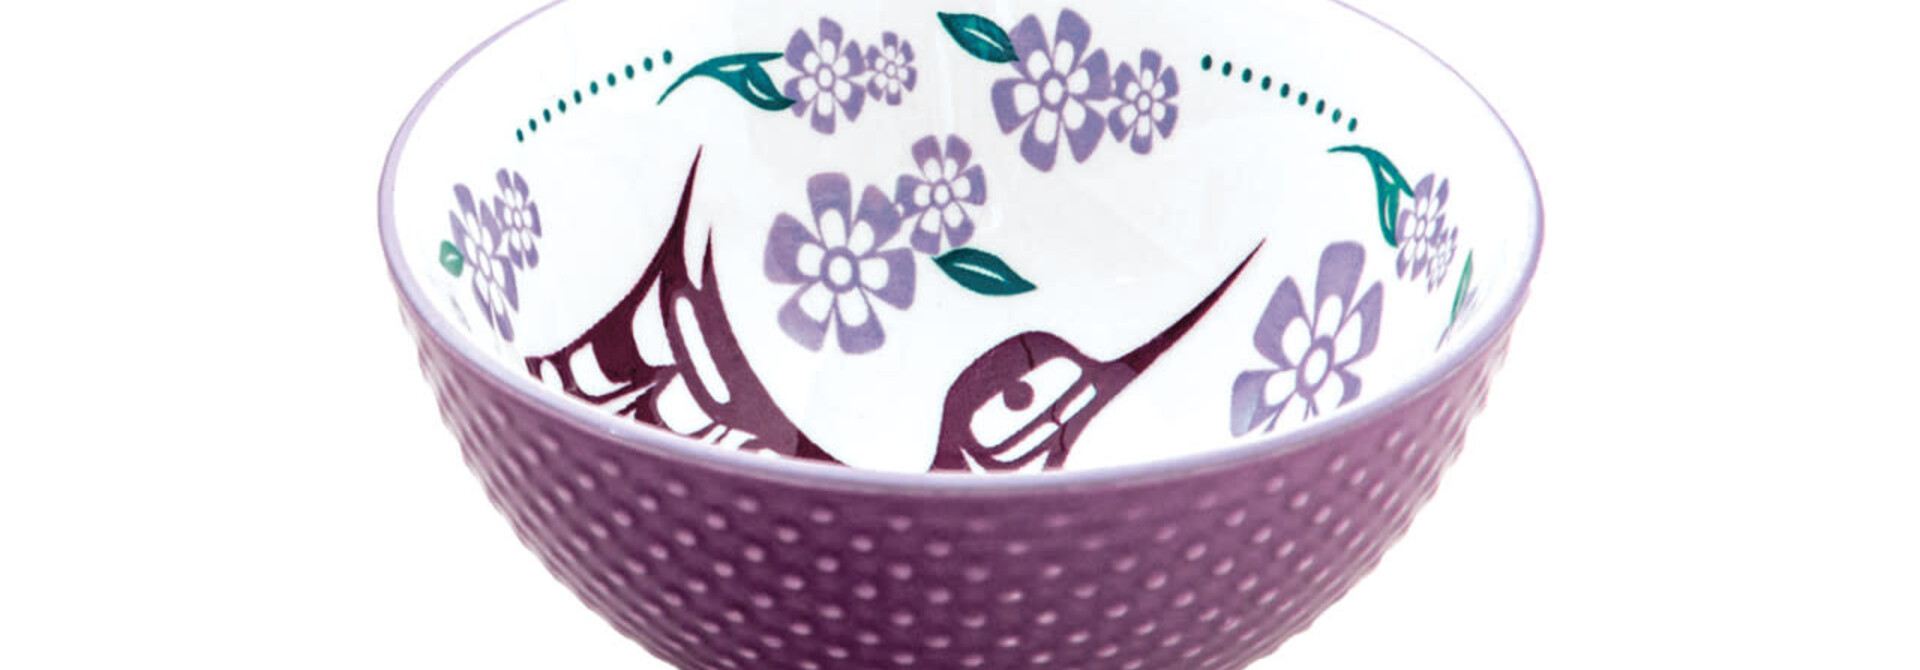 Medium Porcelain Art Bowl - Hummingbird by Francis Dick